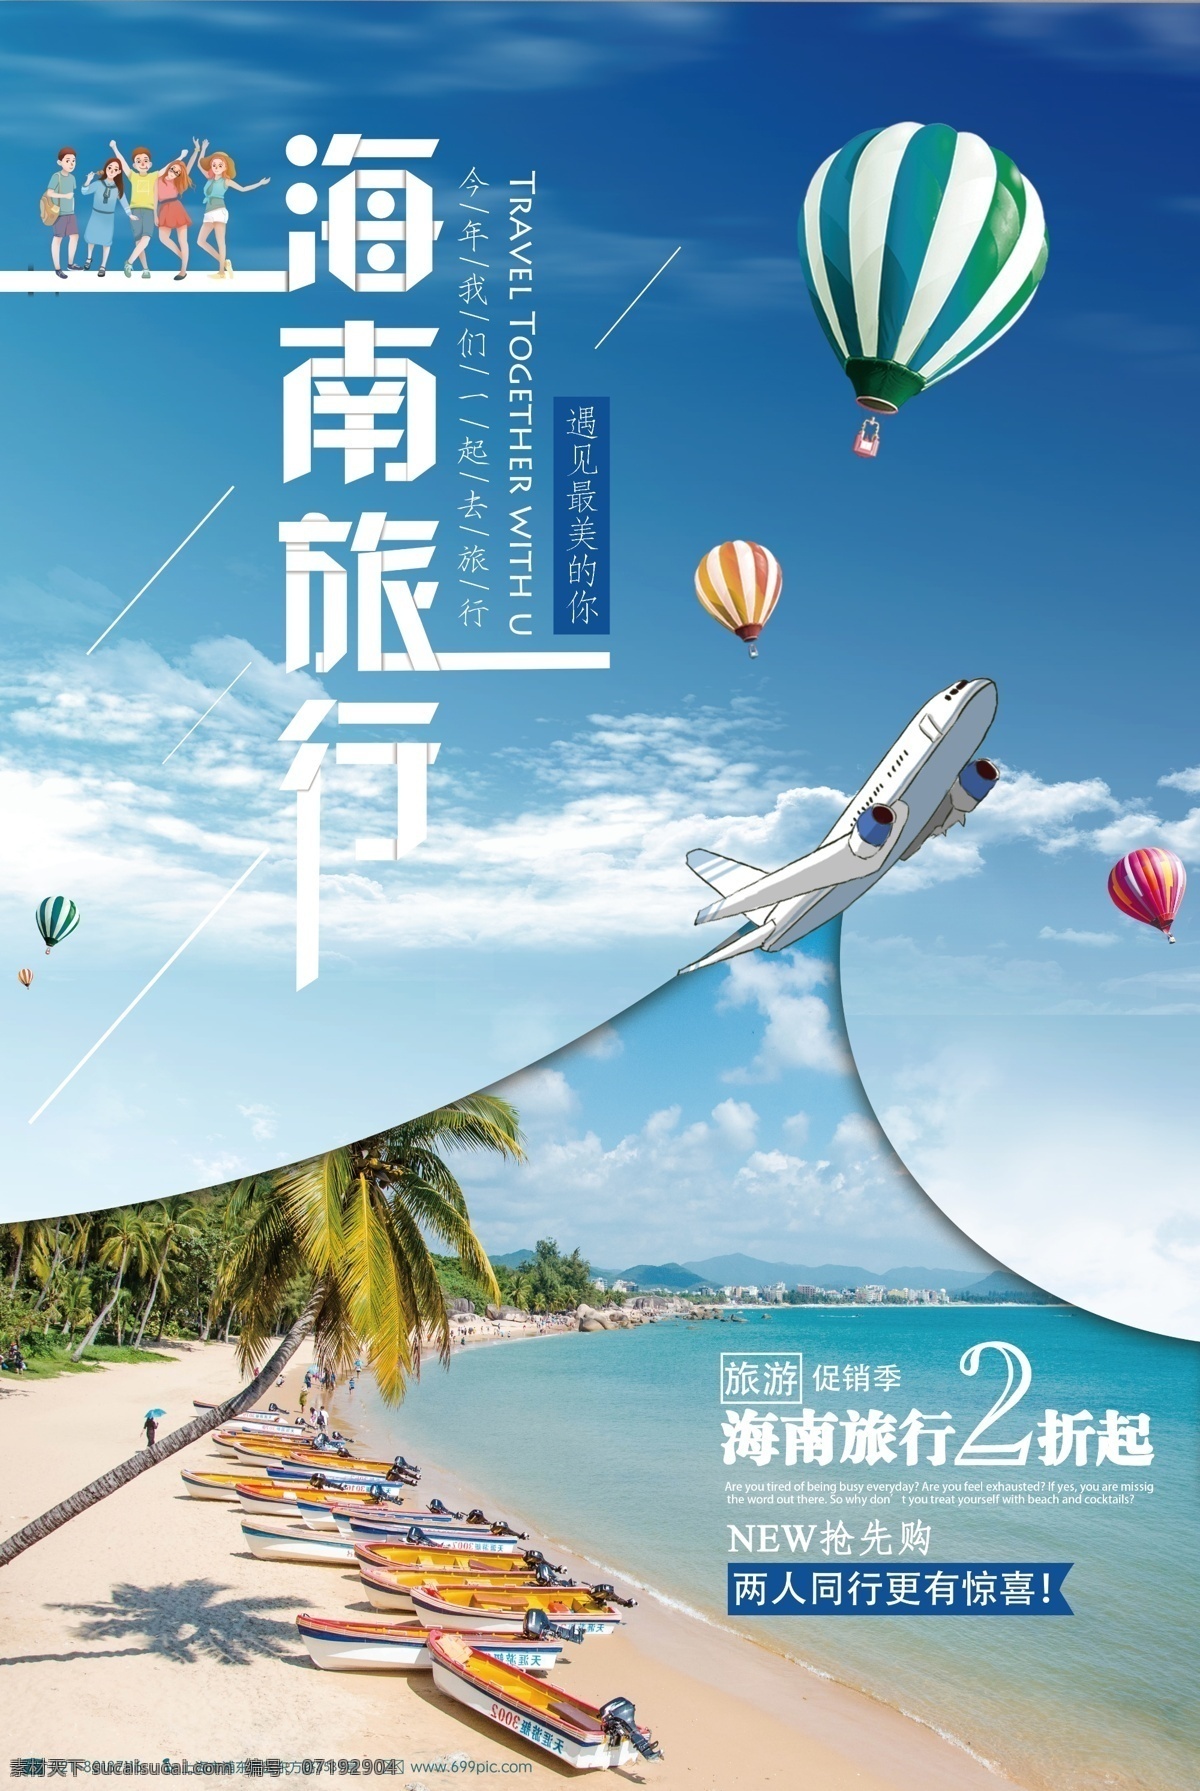 海南之旅 海南 海南旅游 旅游 旅游海报 旅游设计 旅游景点